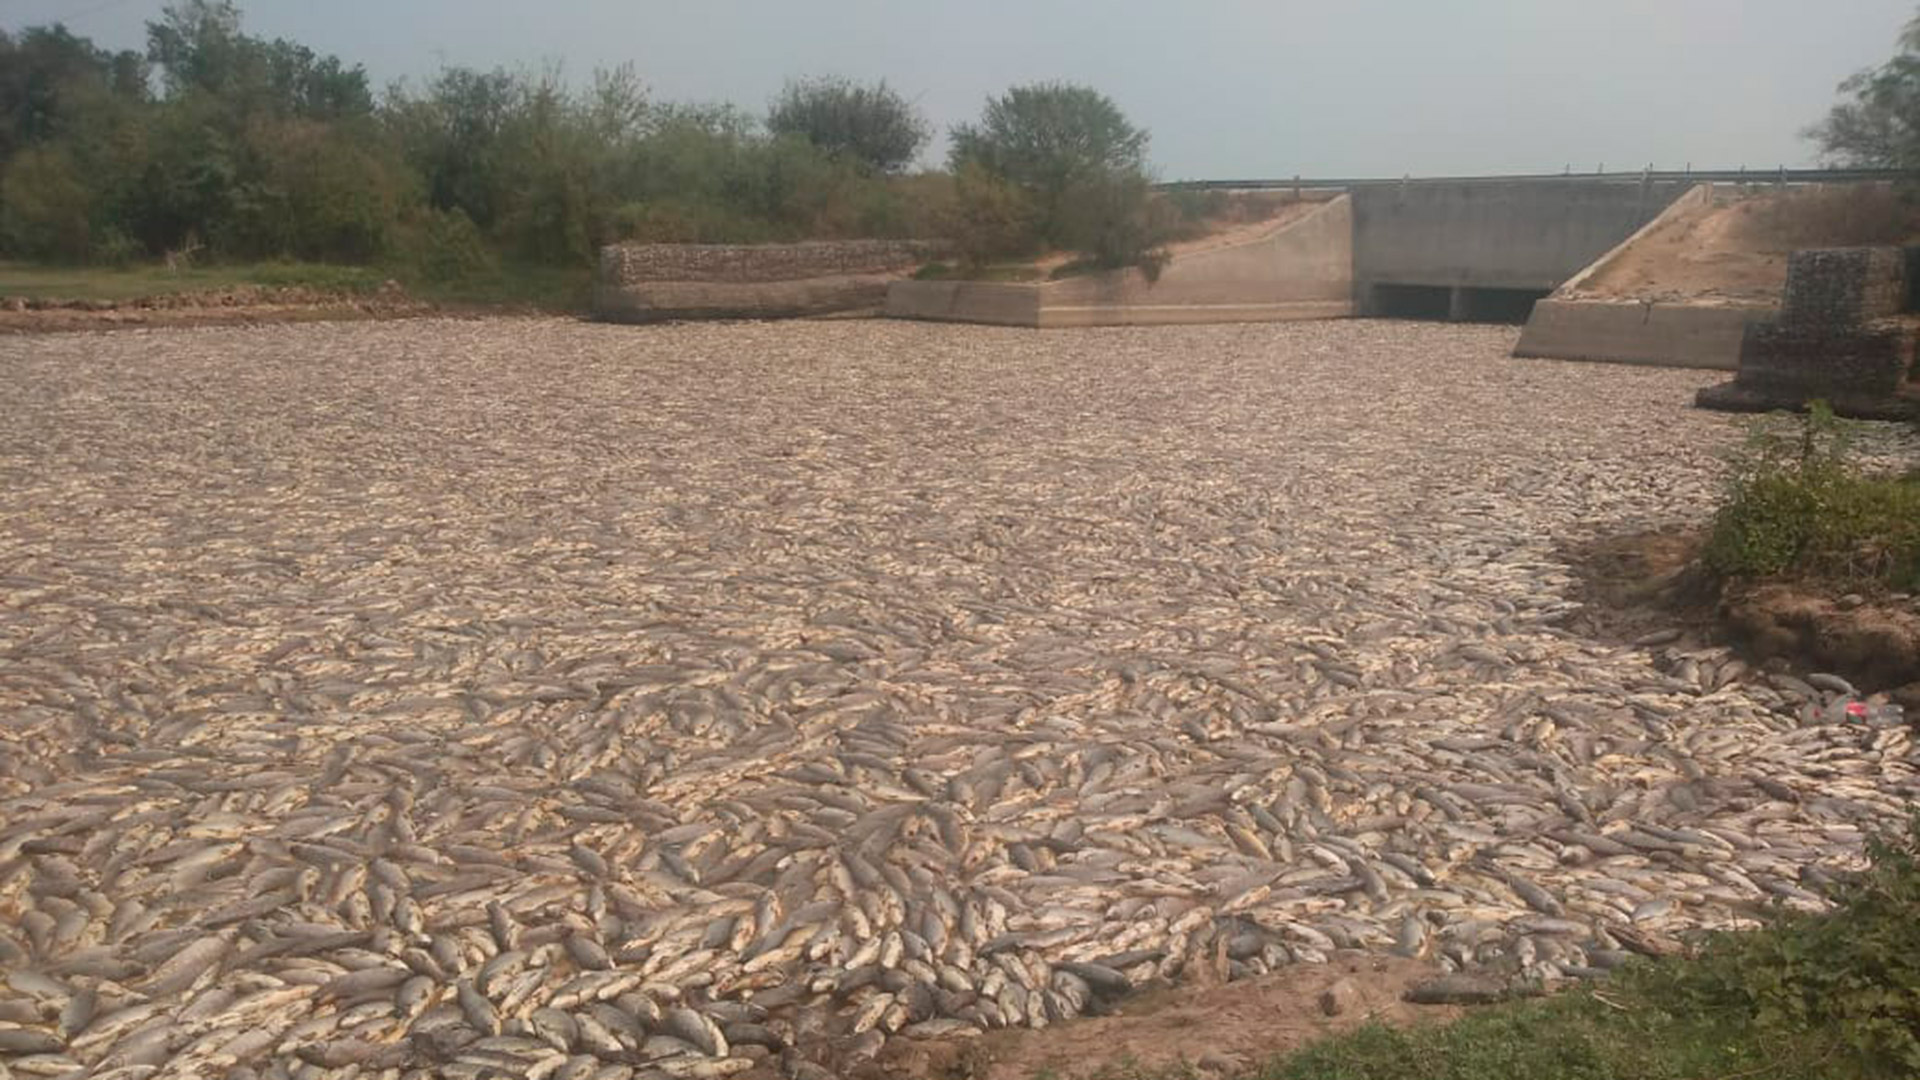 Meses atrás también aparecieron peces muertos en Formosa